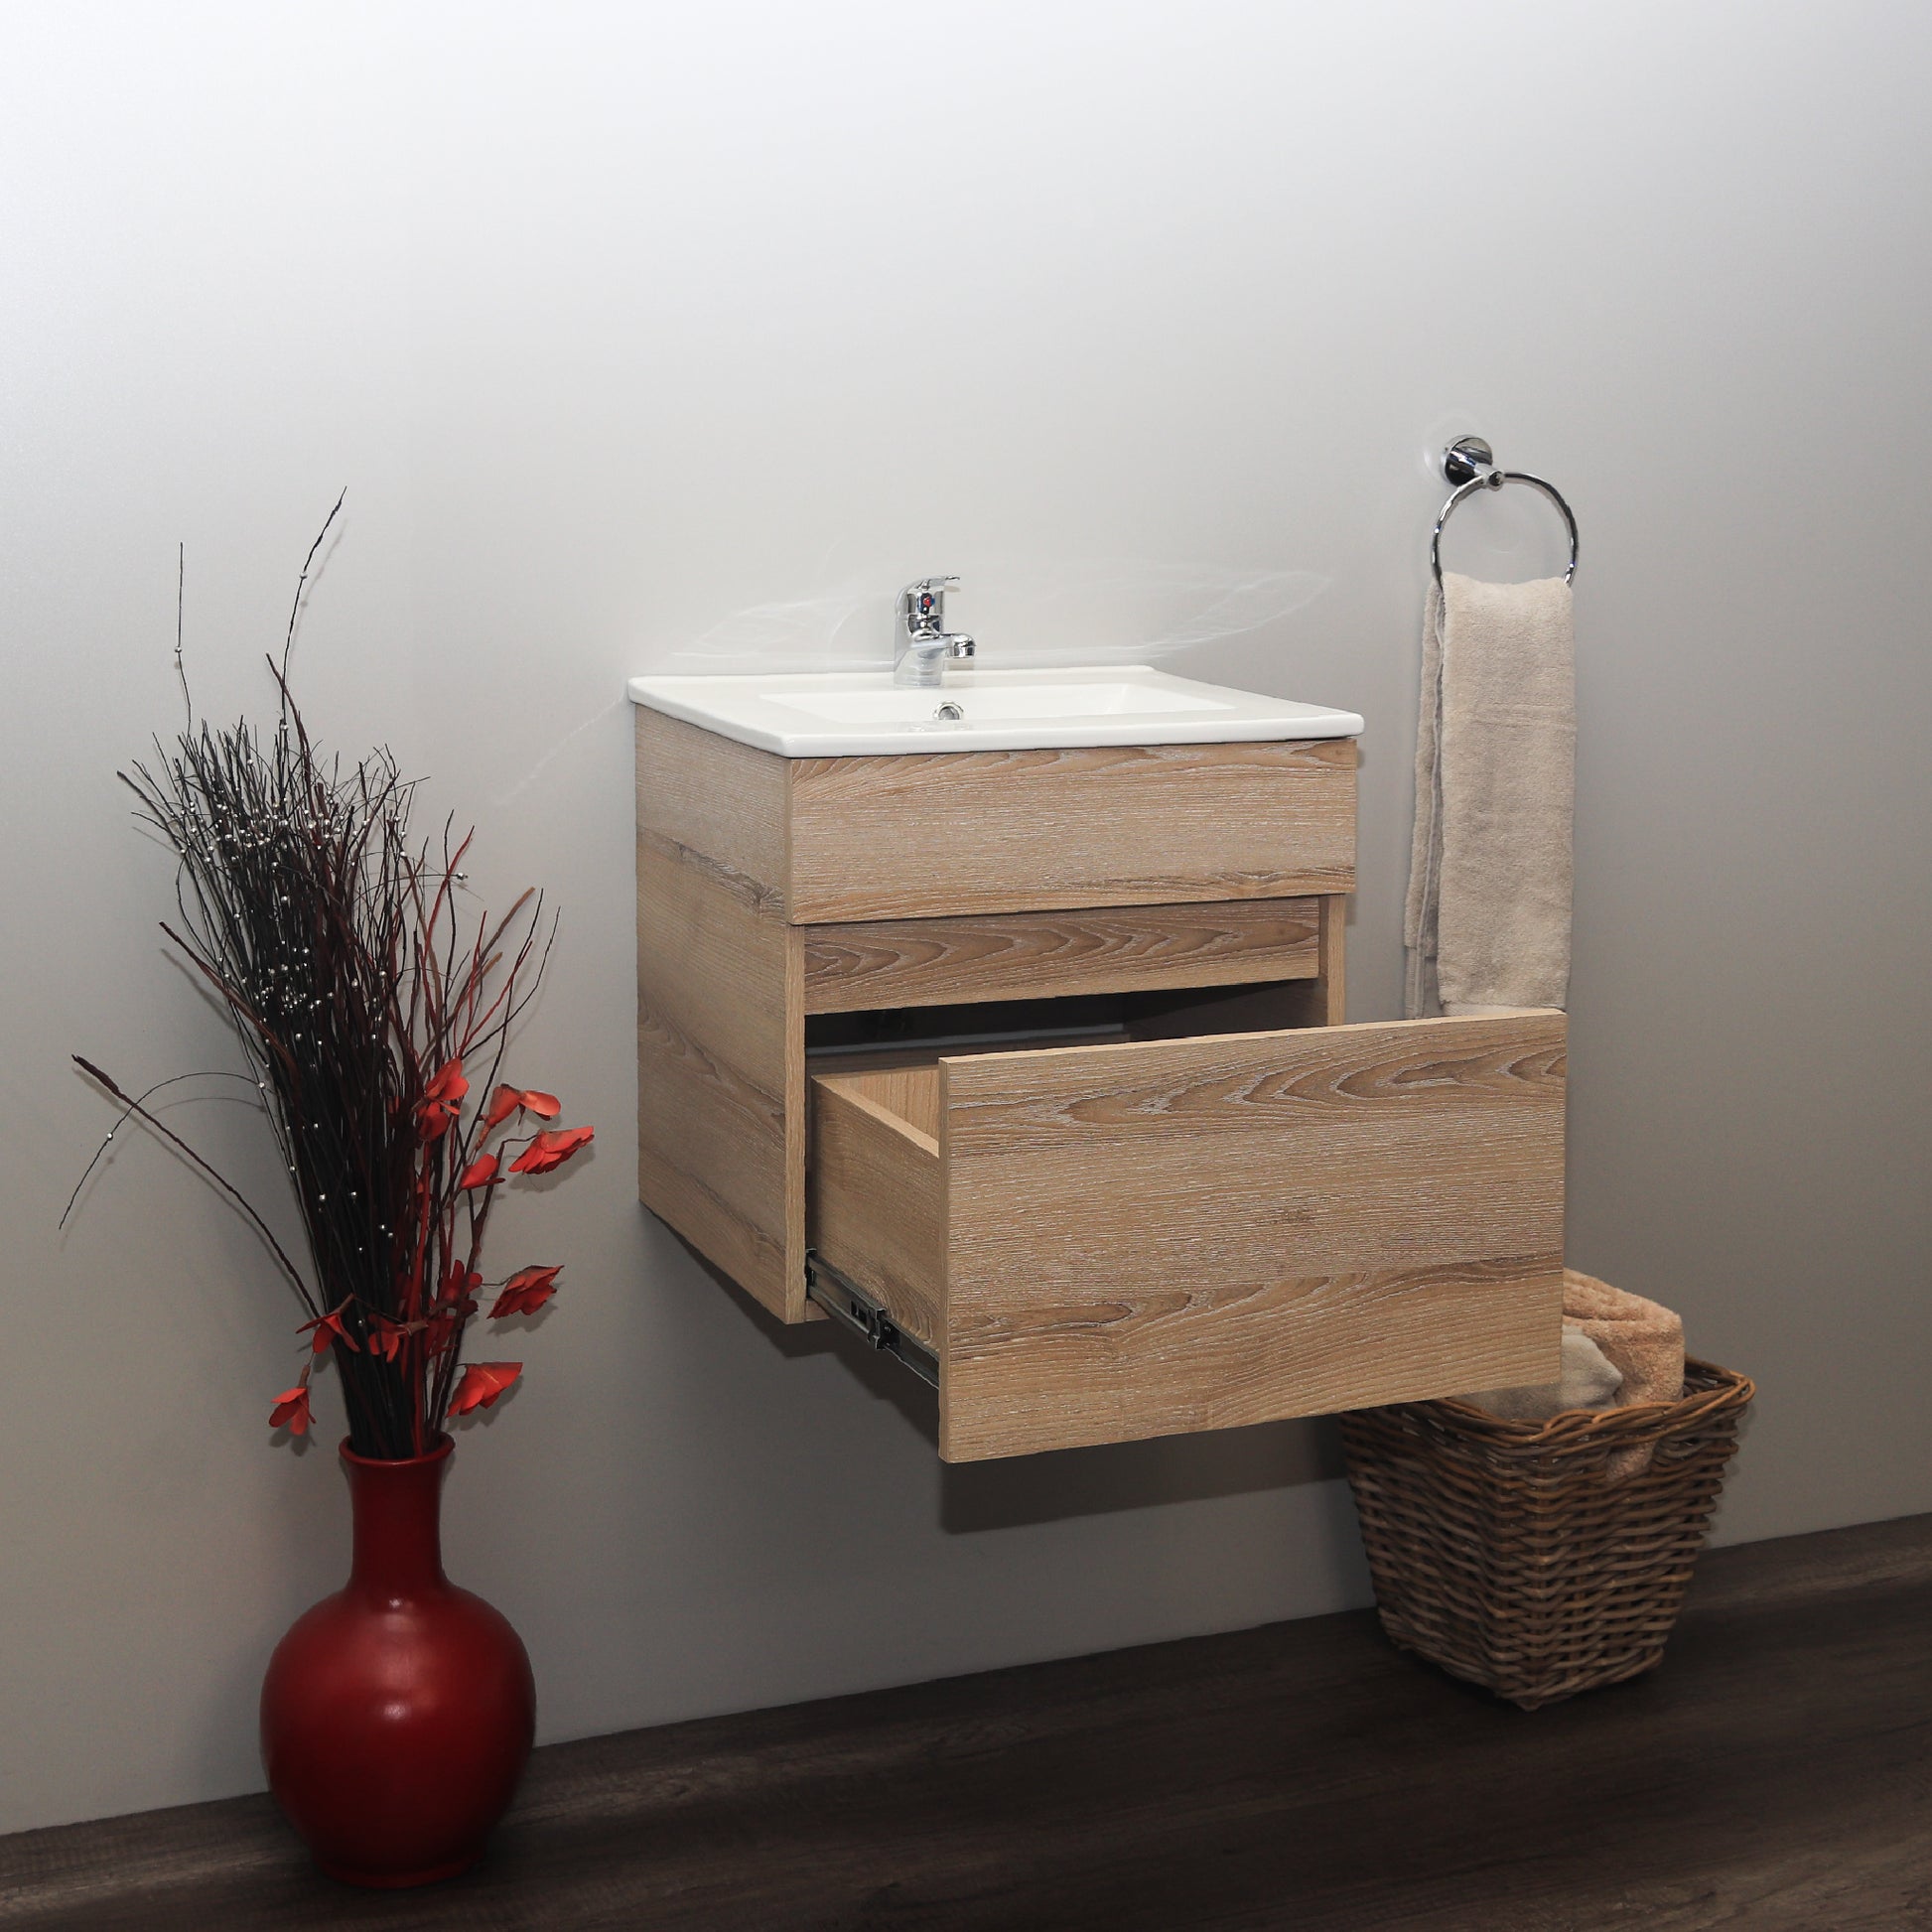 Denver Stylo Compact Floating Bathroom Vanity | Washed Shale | 500